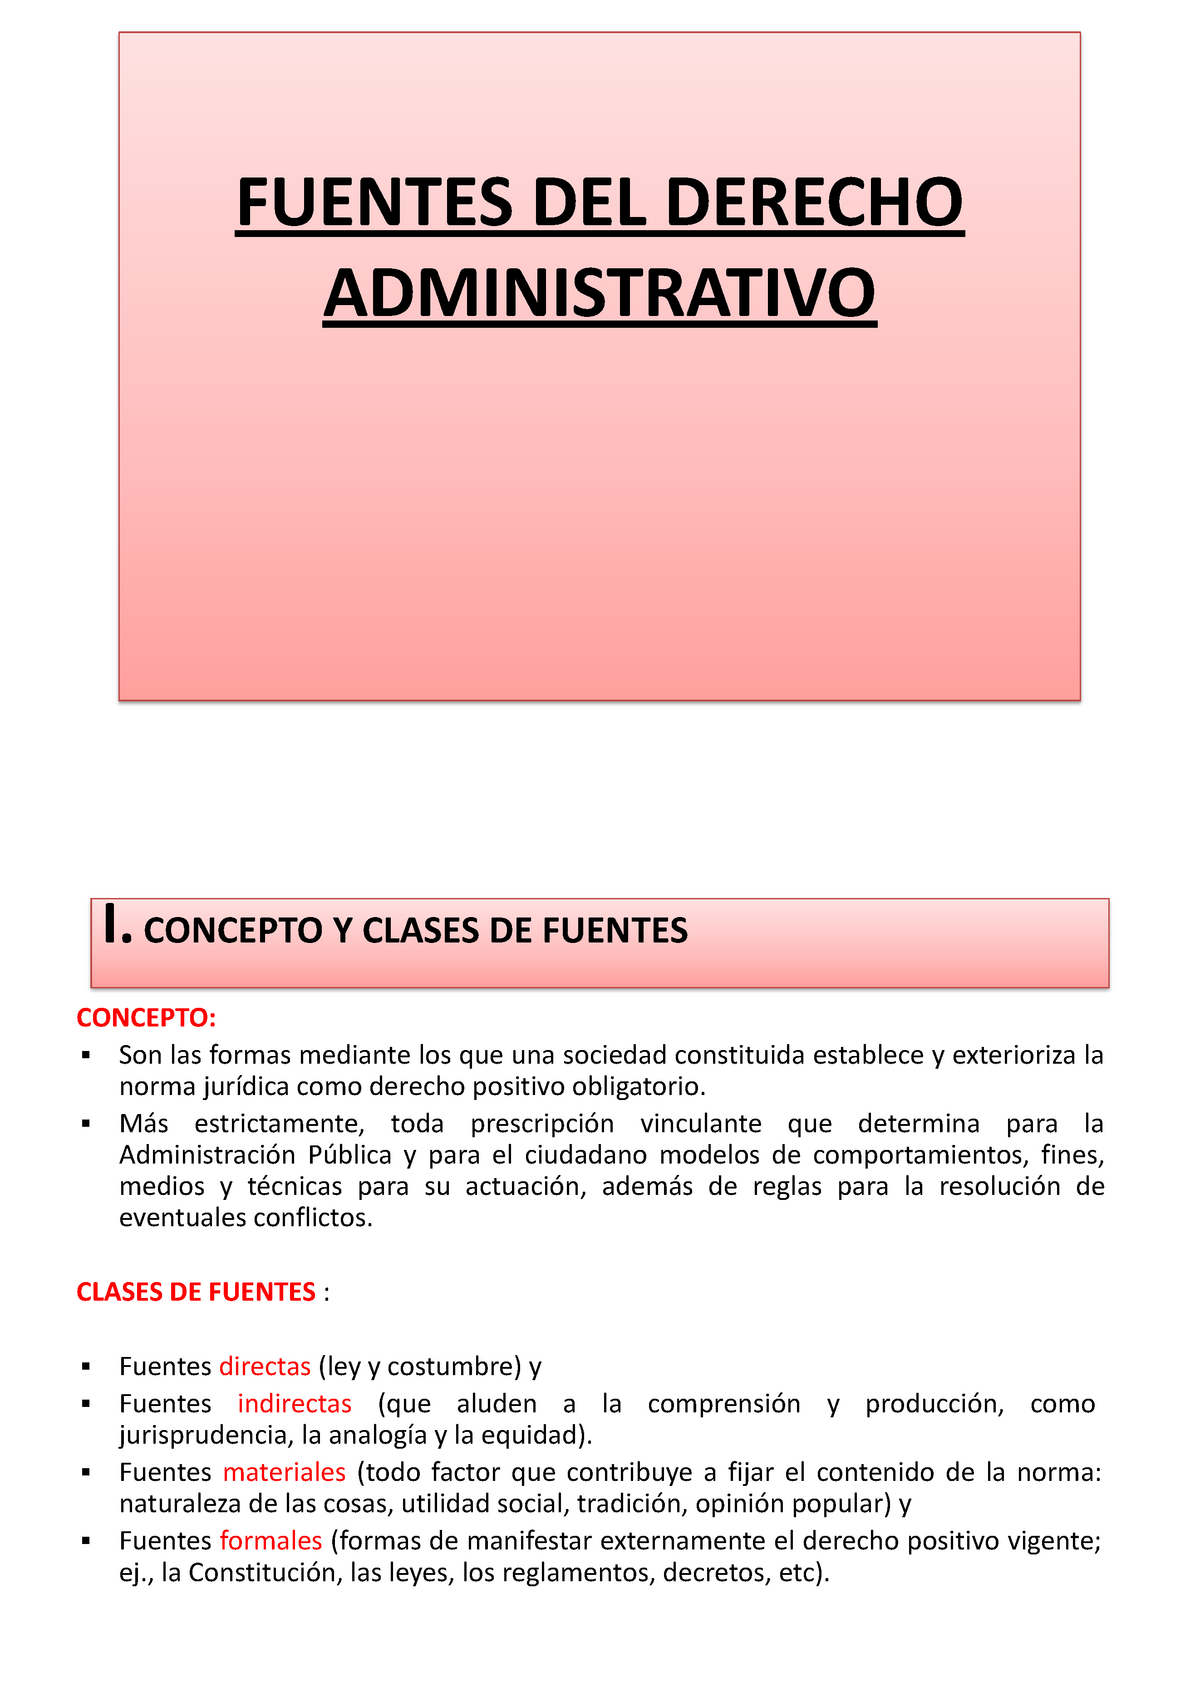 TEMA II LAS Fuentes DEL Derecho Administrativo - FUENTES DEL ADMINISTRATIVO I. CONCEPTO Y - Studocu